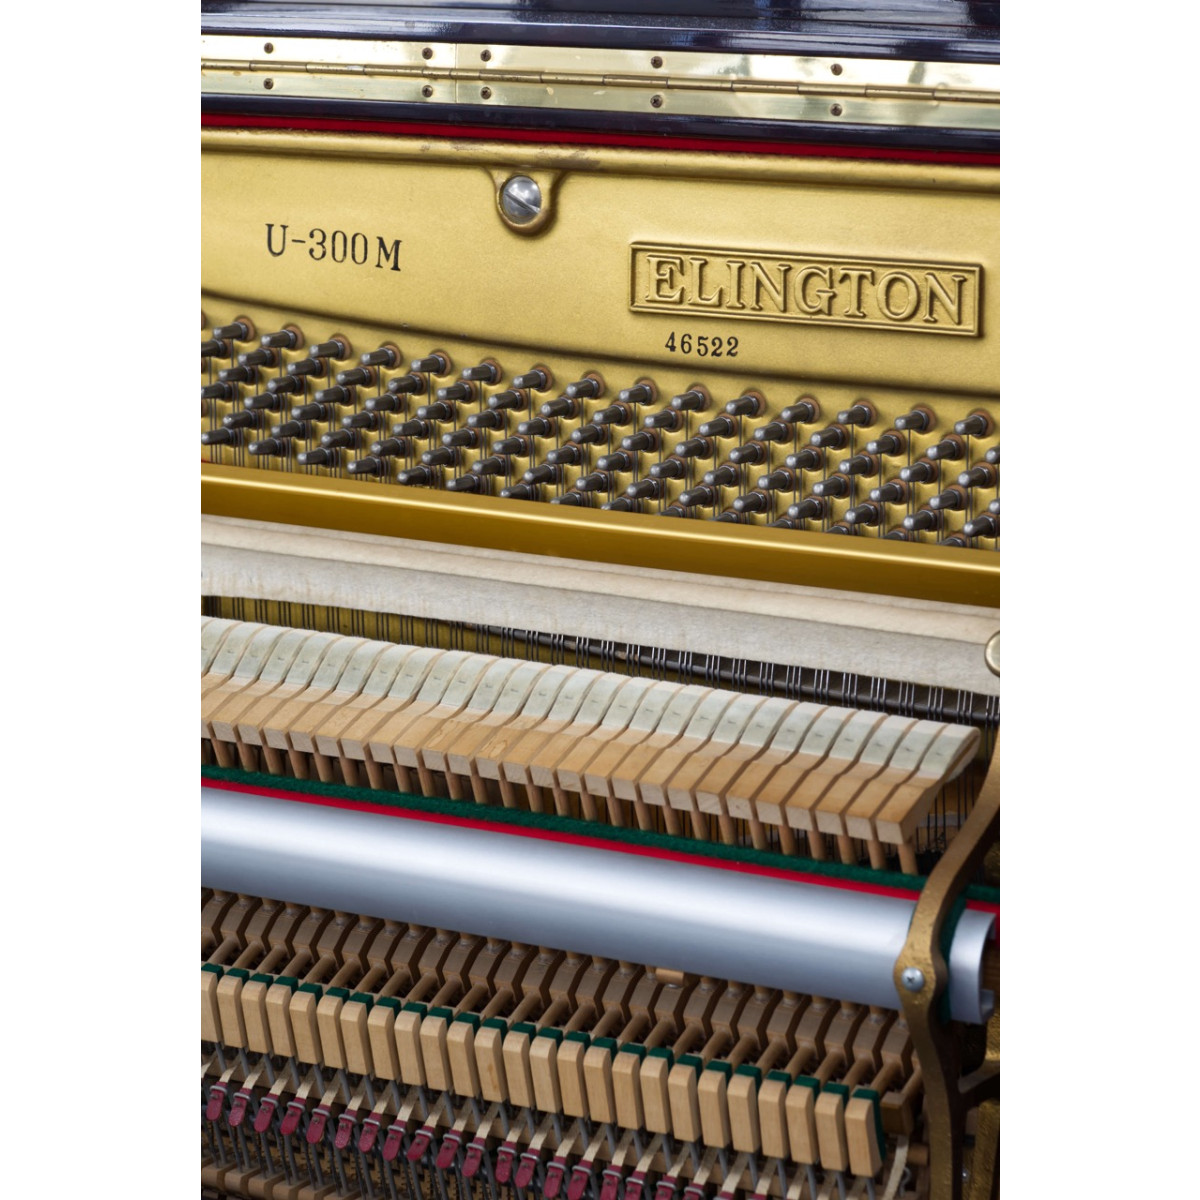 Gebrauchtes Klavier Marke Elington, Mahagoni Hochglanz, Ansicht: Seriennummer